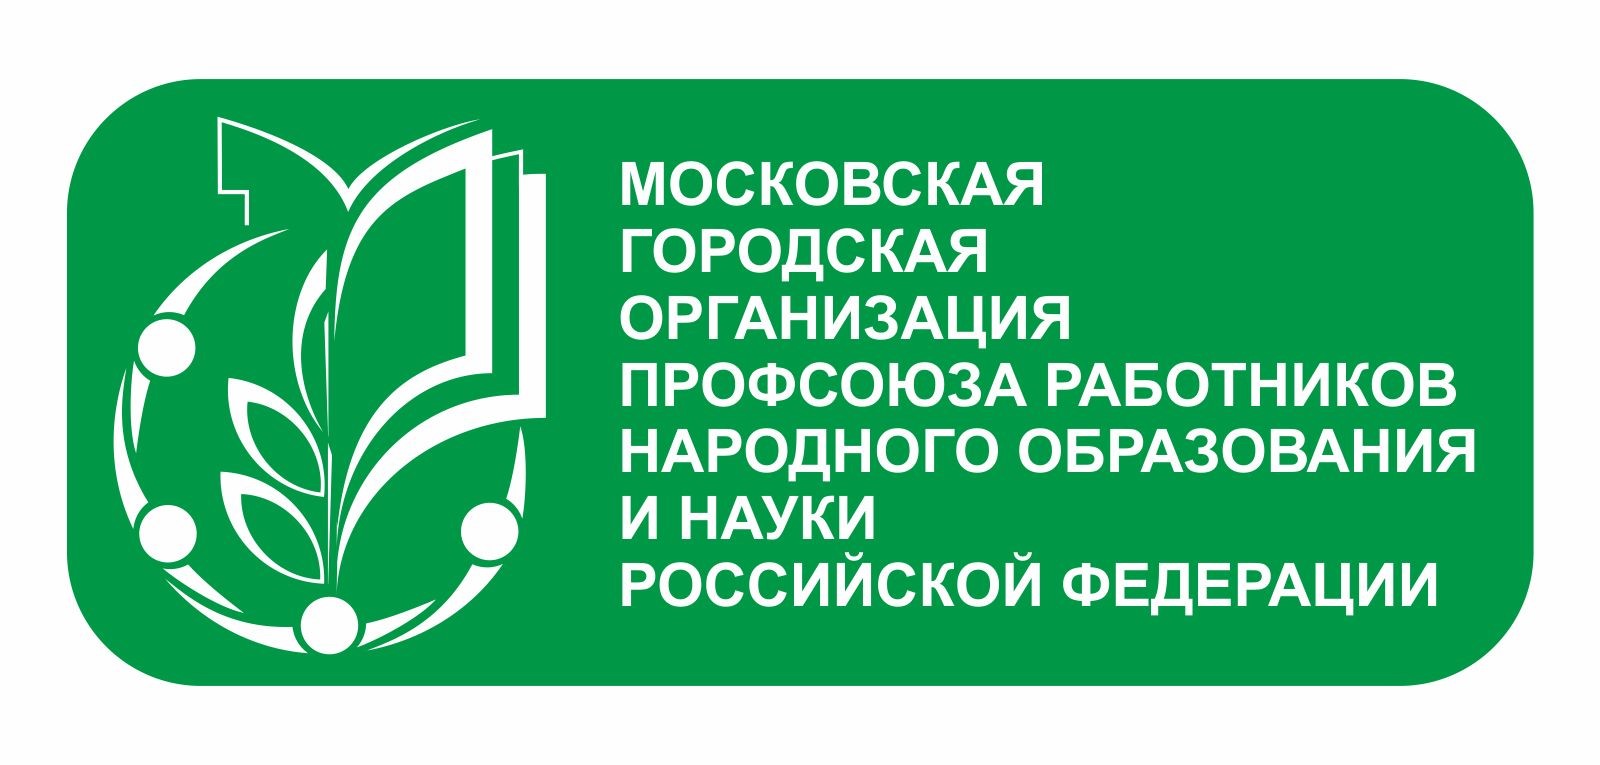 Новая символика Московской городской организации Профсоюза работников народного образования и науки РФ